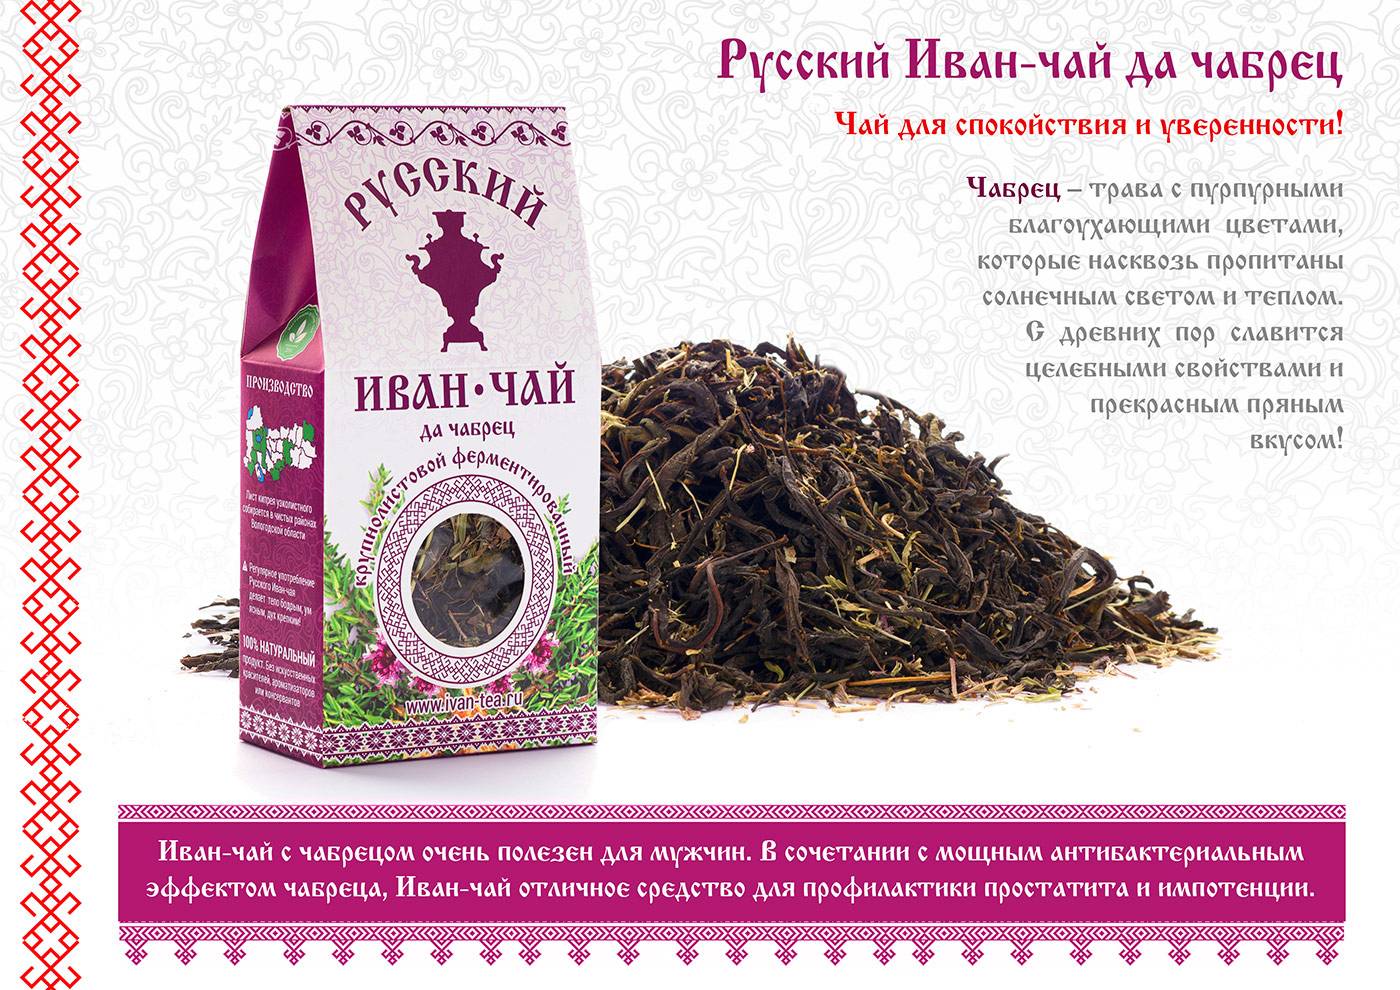 Иван чай: полезные лечебные свойства и противопоказания для женщин и мужчин